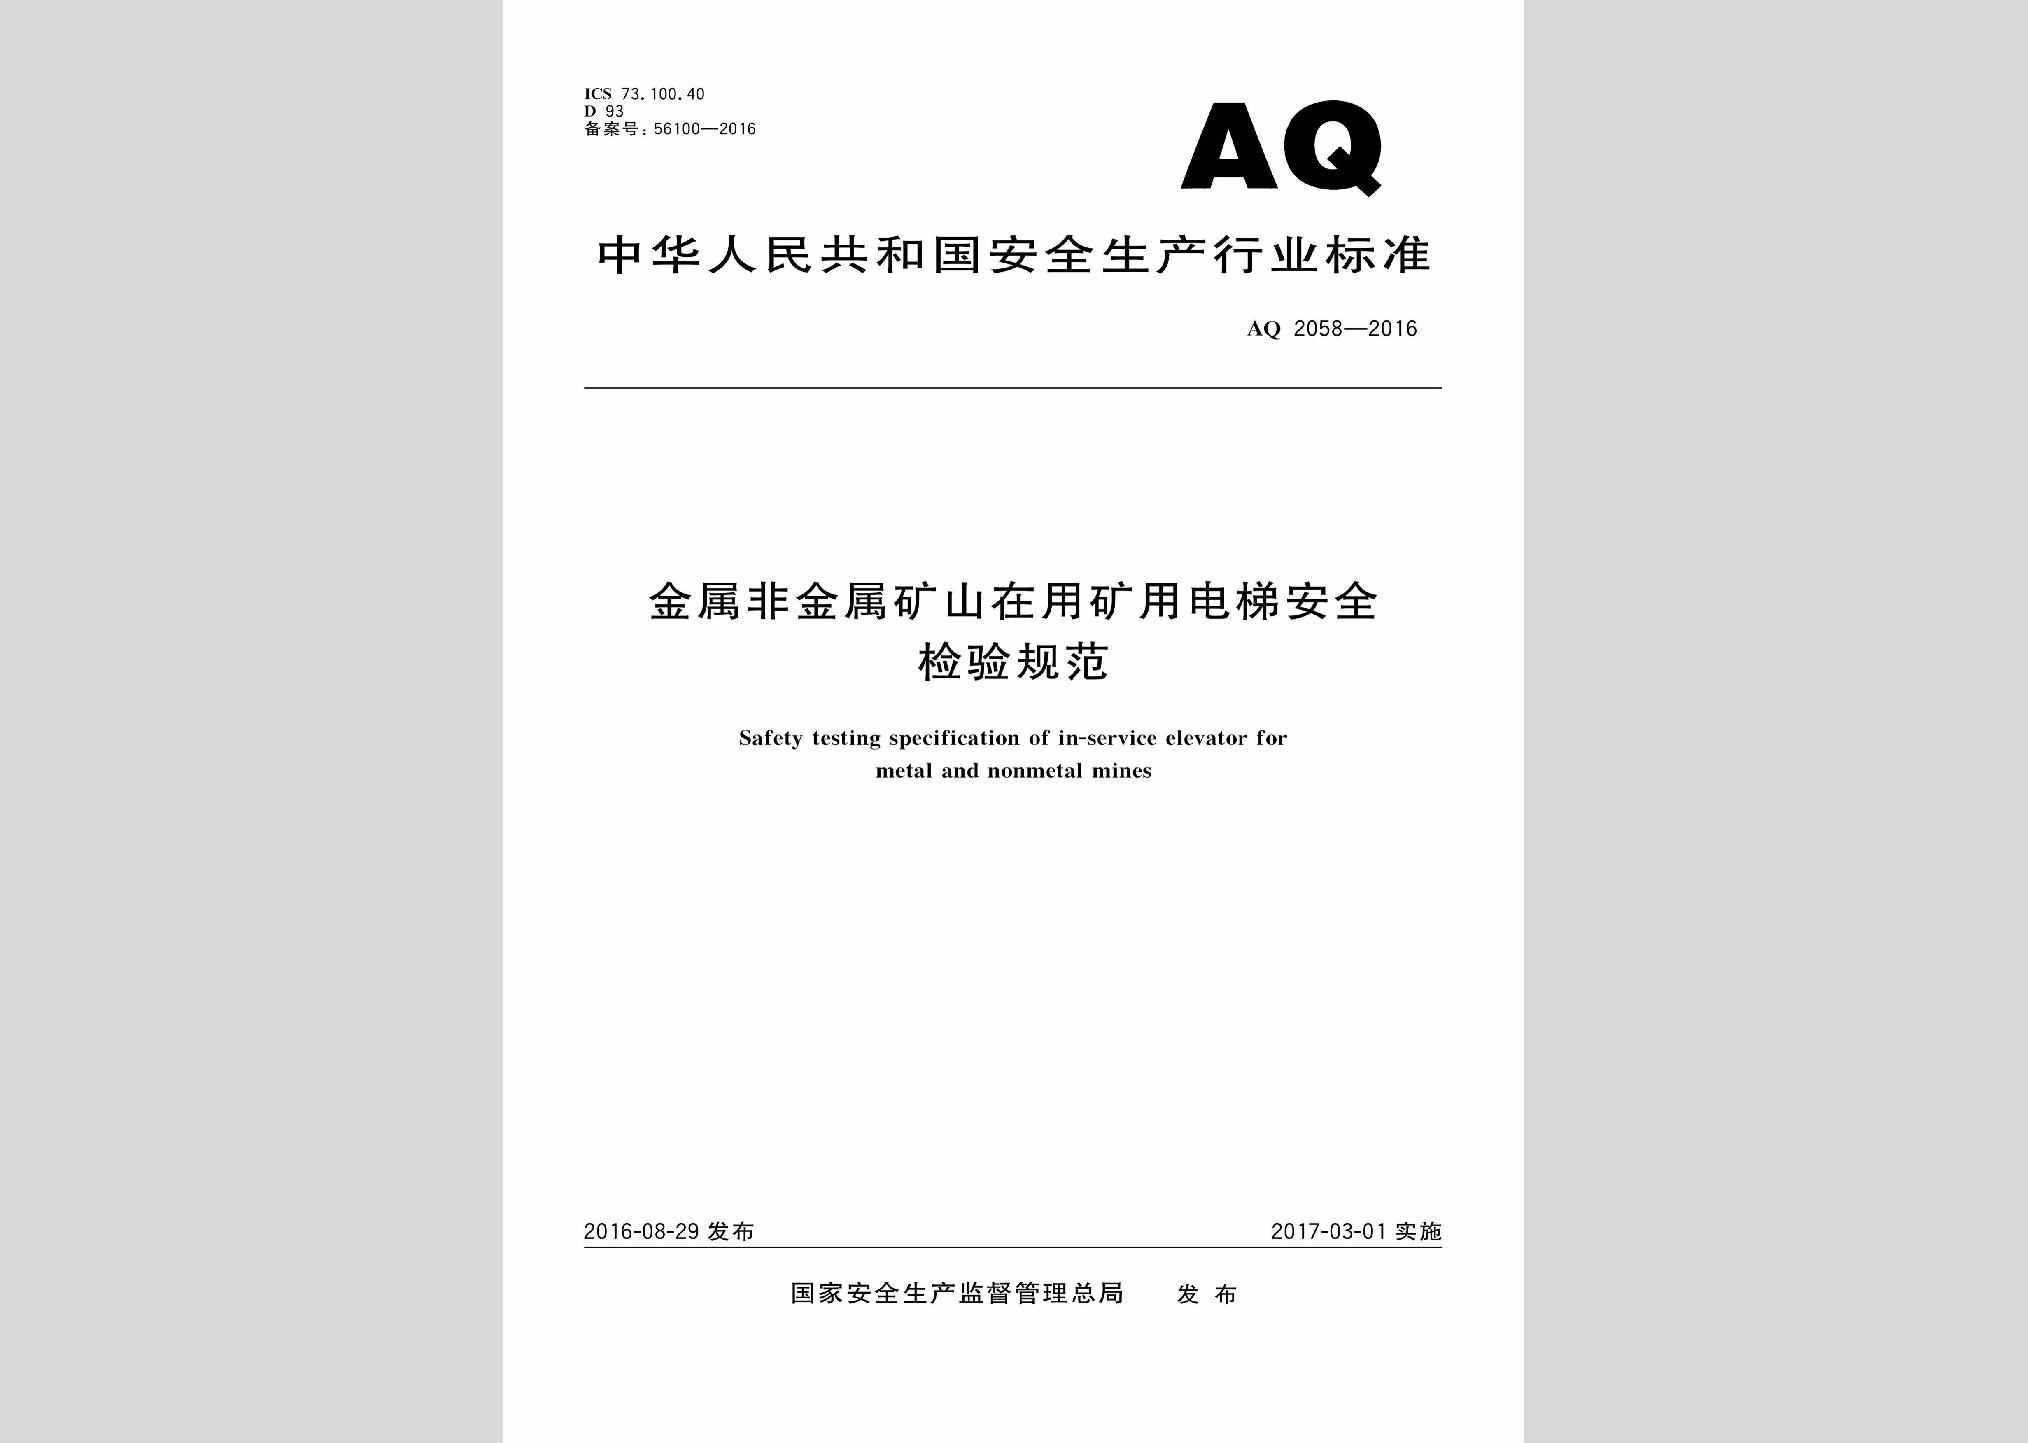 AQ2058-2016：金属非金属矿山在用矿用电梯安全检验规范